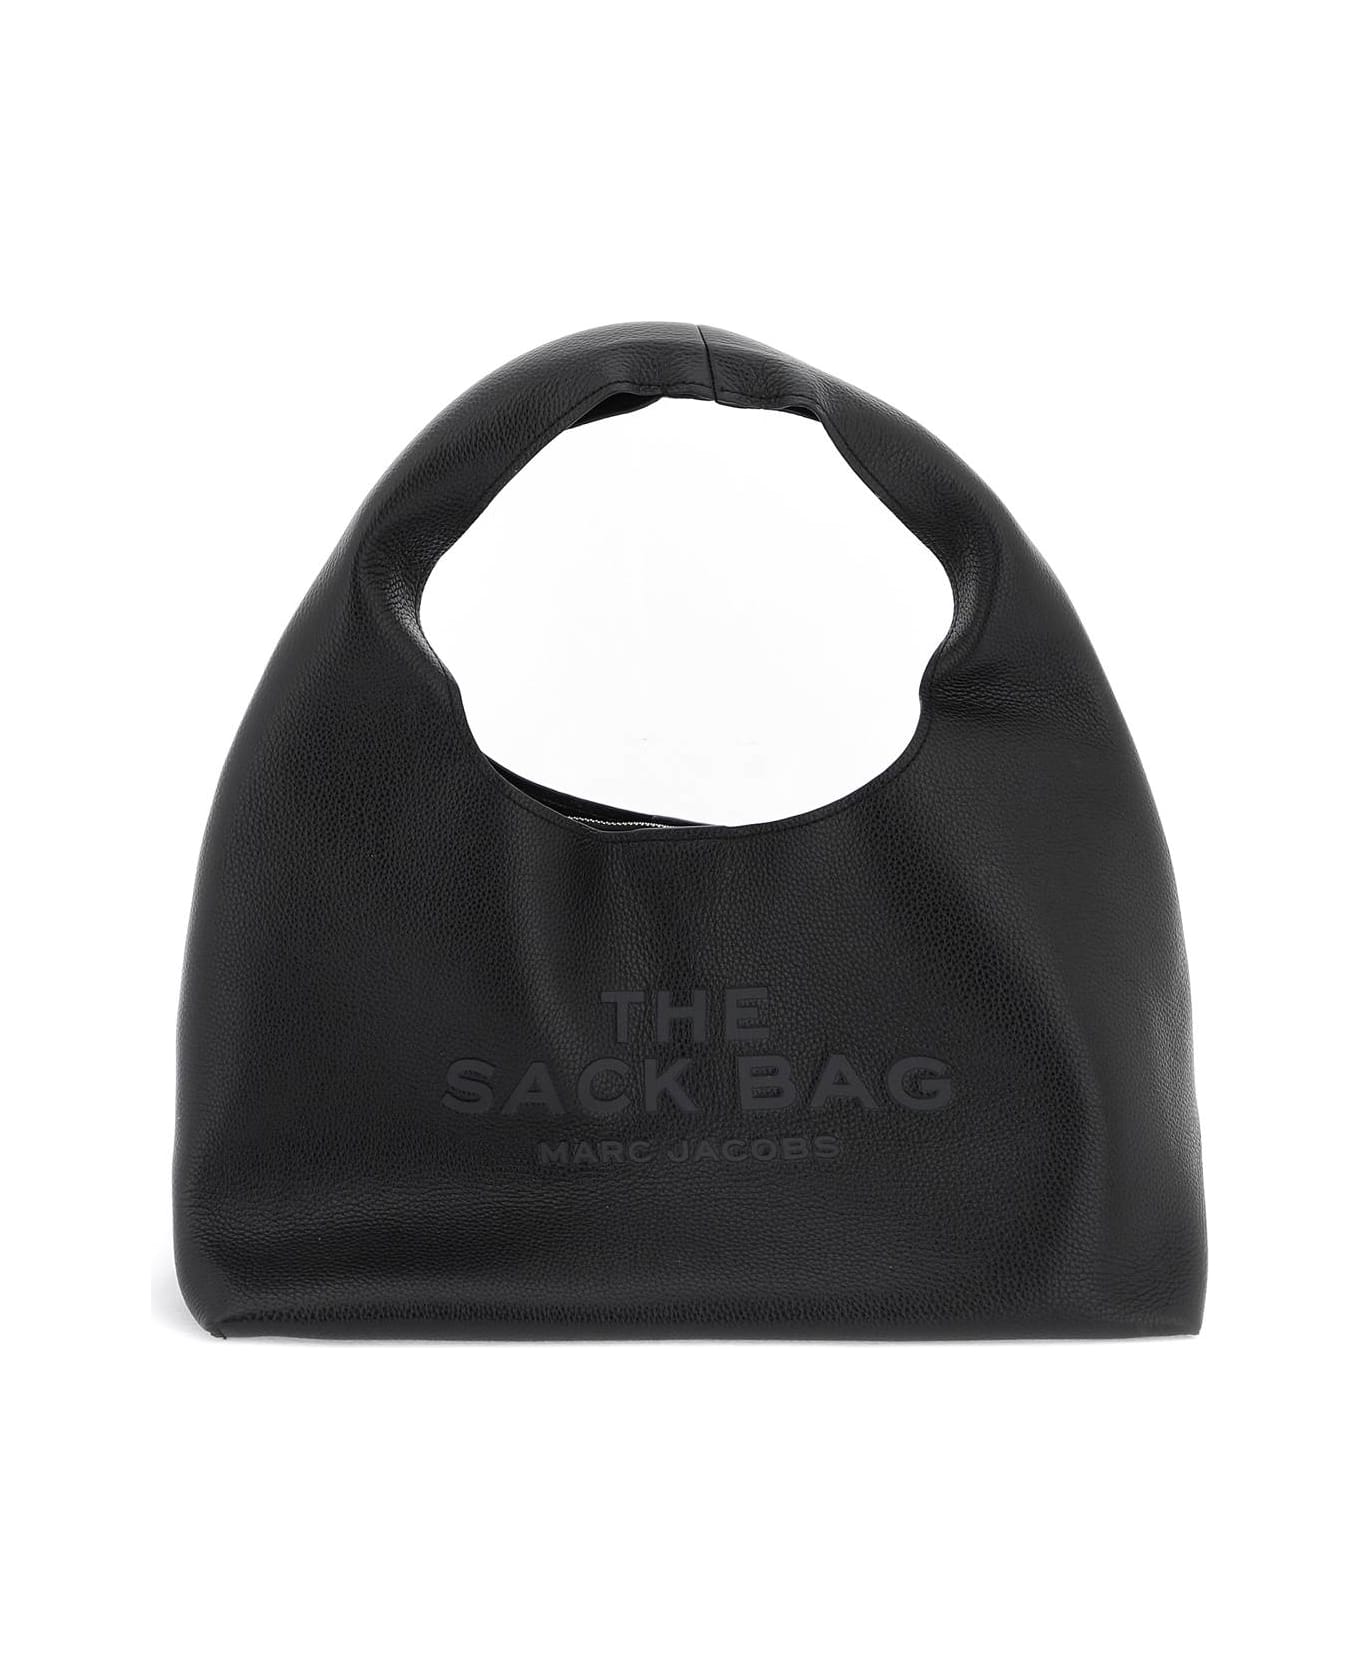 Marc Jacobs The Sack Bag - BLACK (Black) トートバッグ